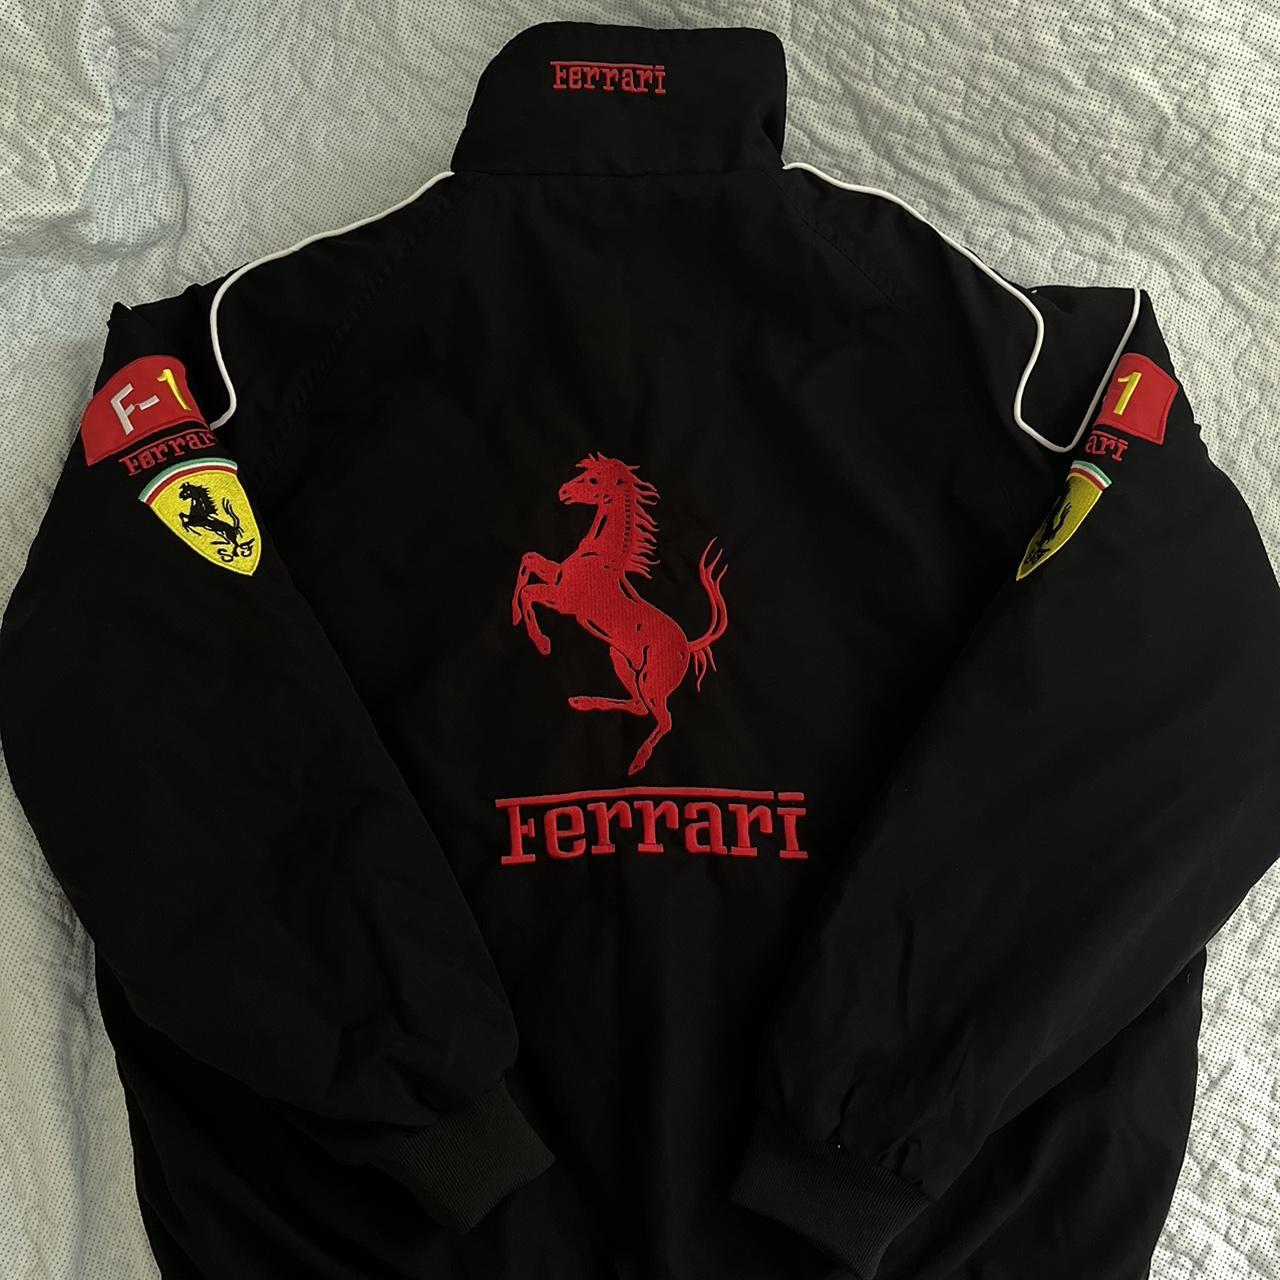 f1 ferrari jacket, black jacket, size medium, brand... - Depop